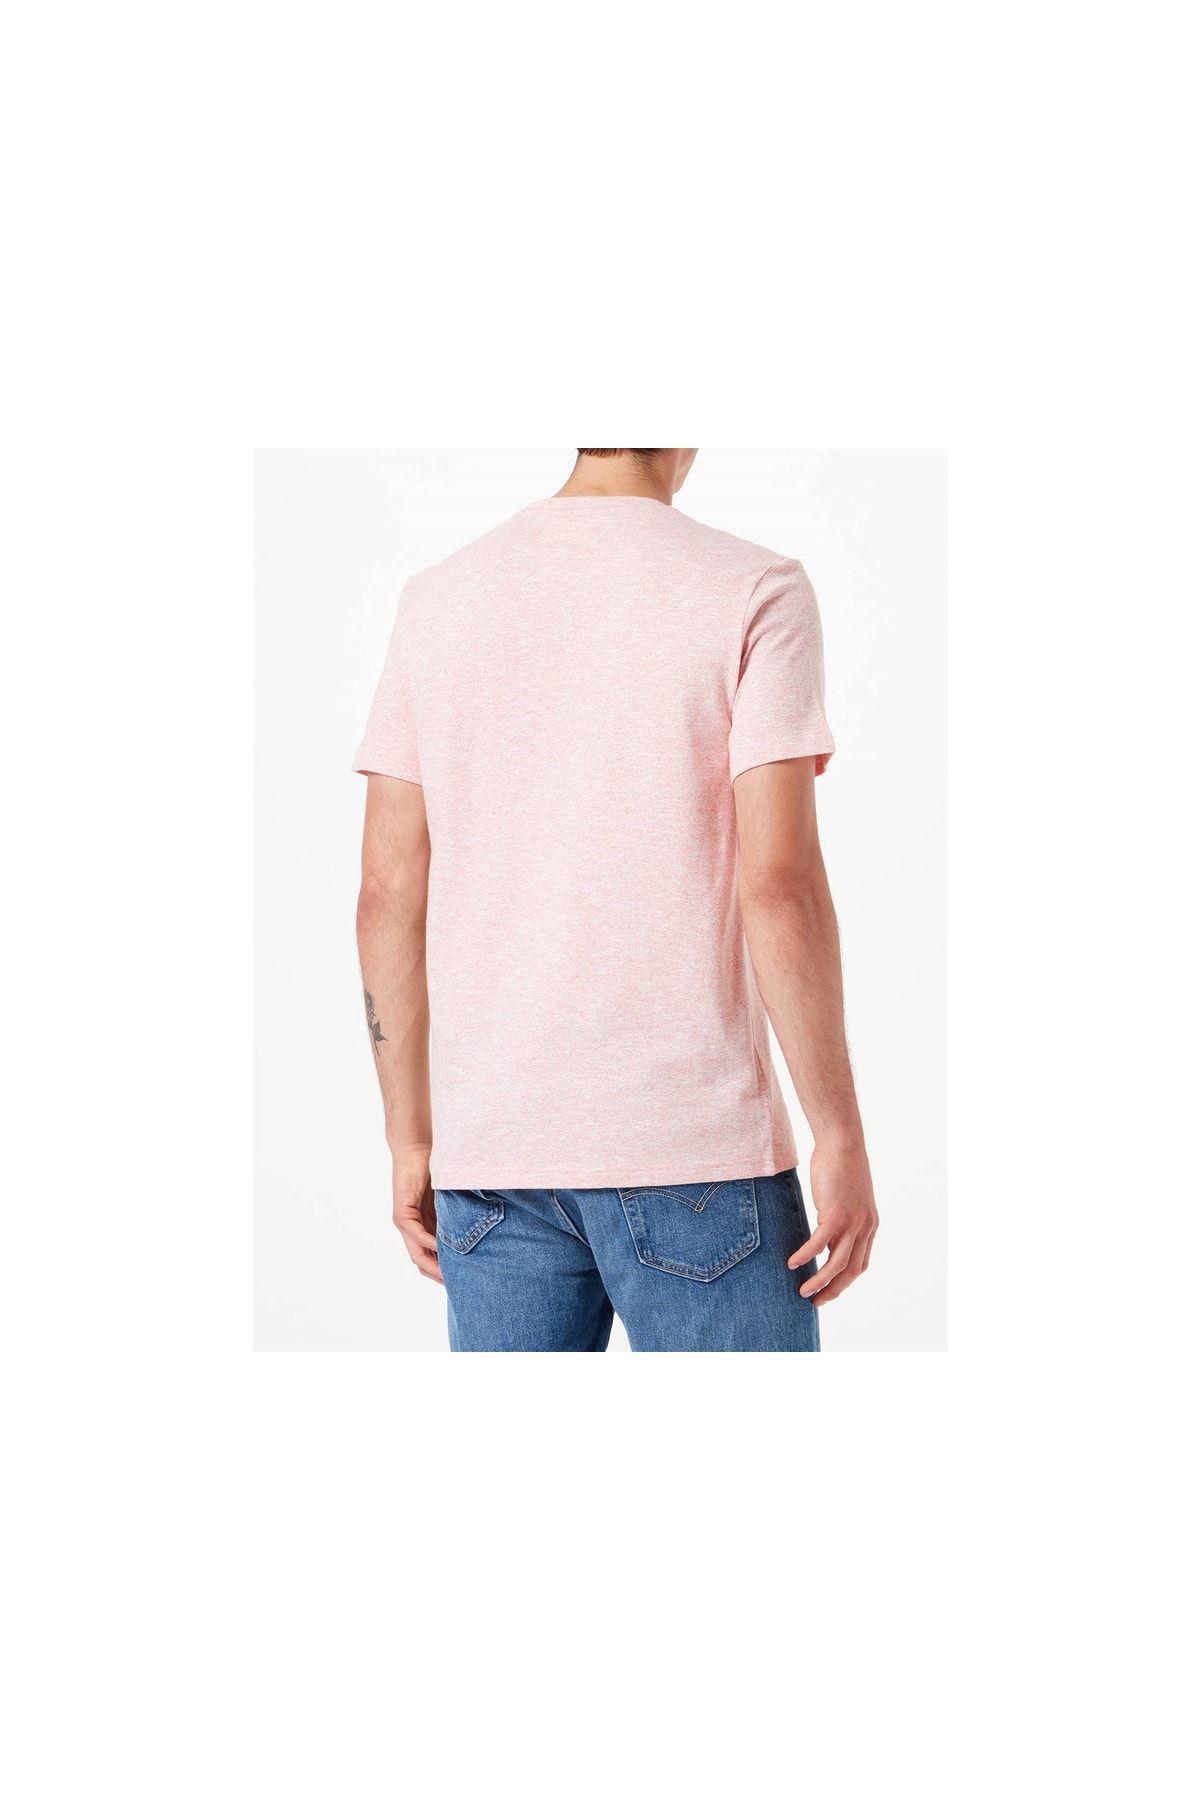 Tom Tailor Shirt - Pink - Regular fit - Trendyol